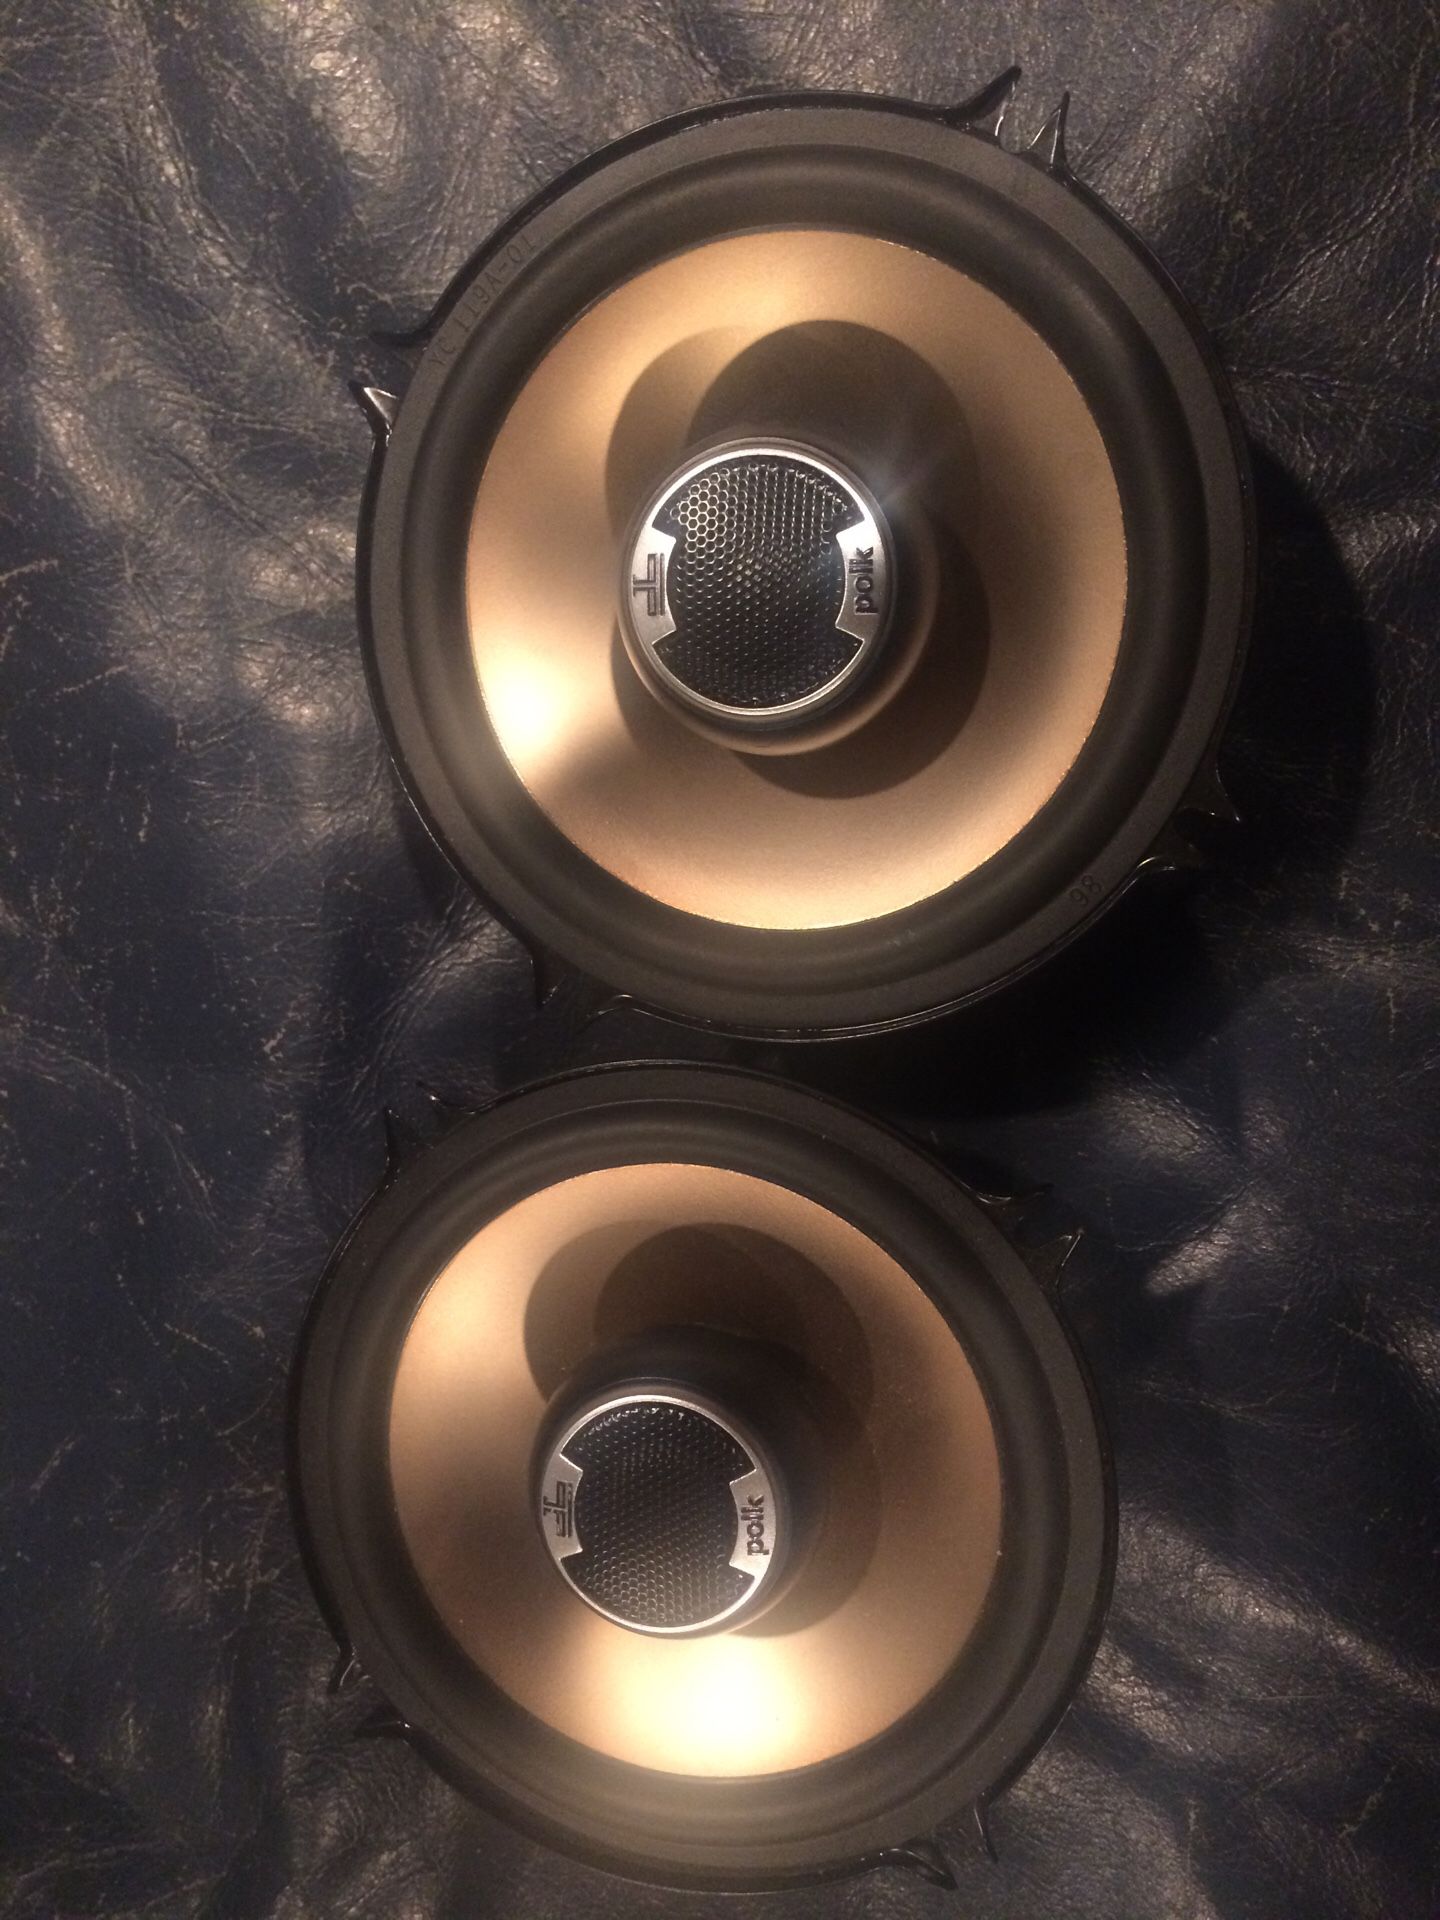 Pair of Polk audio 5 1/4 coaxial speakers